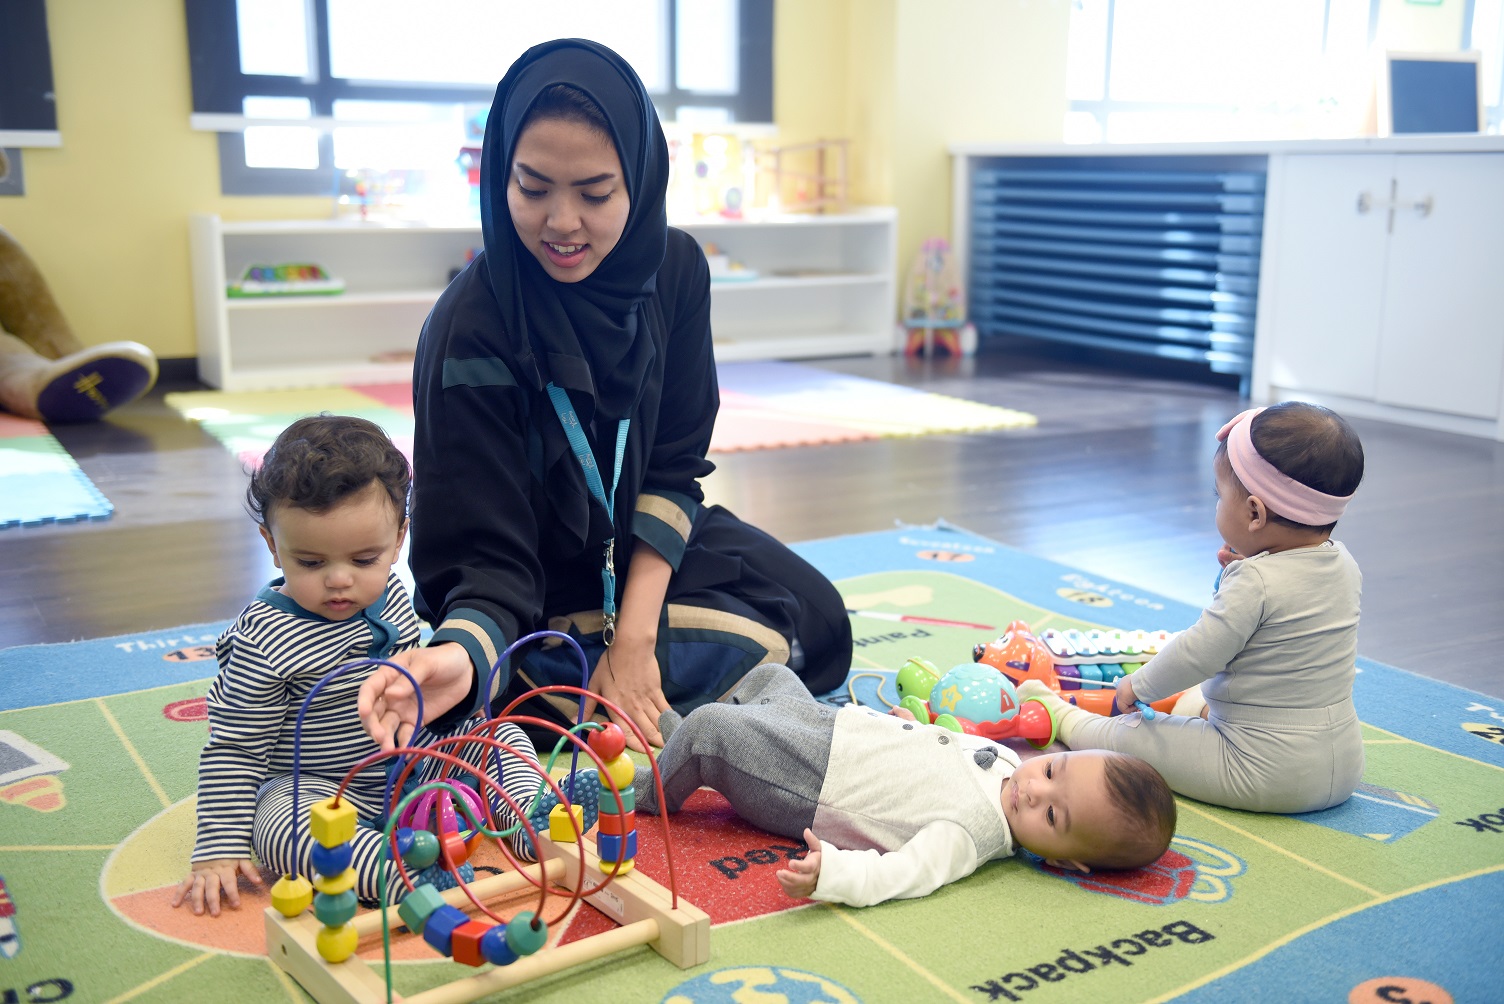 توفر حضانات أطفال في مقر العمل لعب دورًا حيويًا في زيادة إنتاجية السعوديات